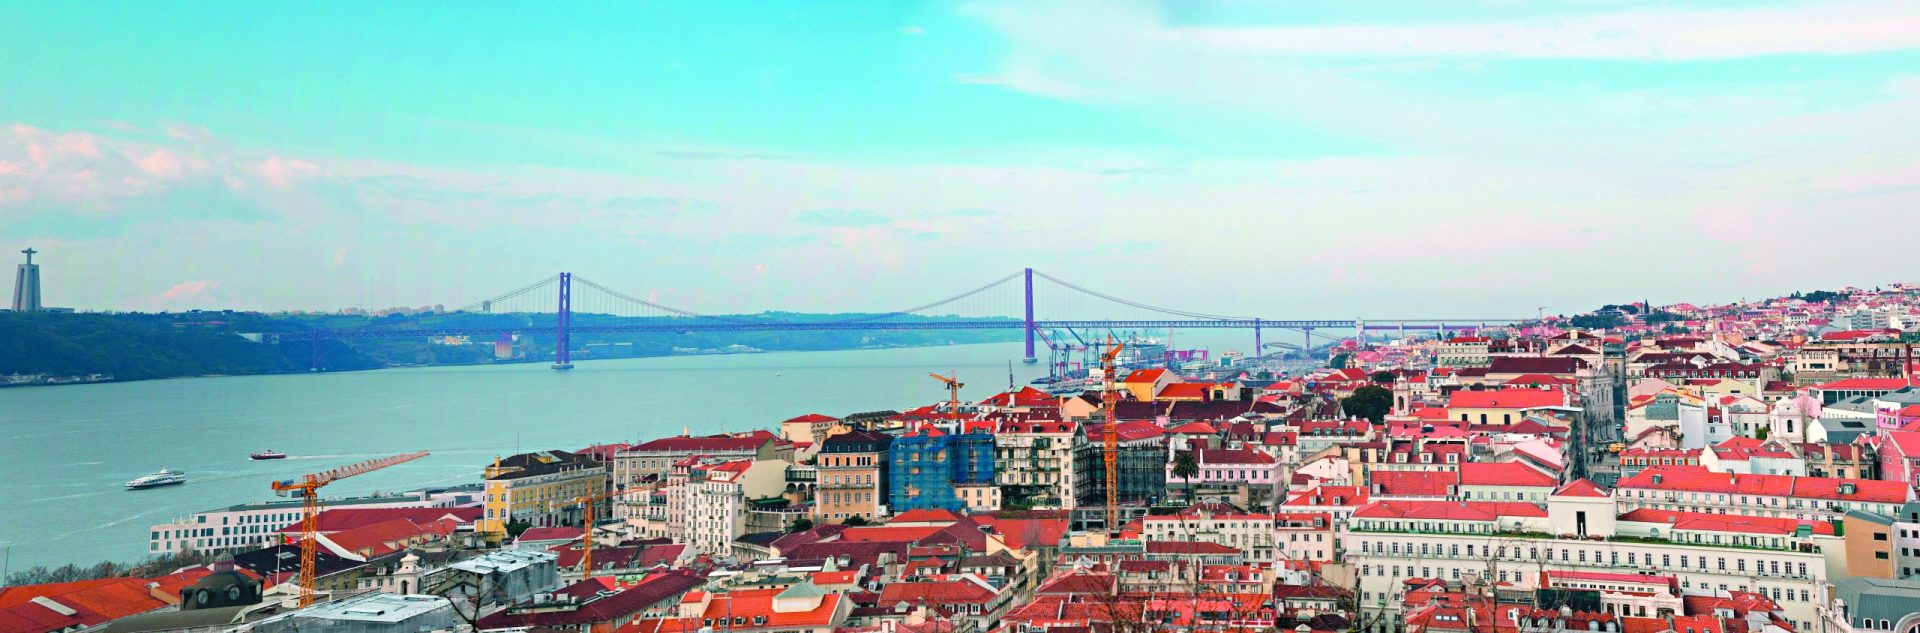 Morar no centro da cidade ‘não passa de um sonho’ para a maioria dos portugueses